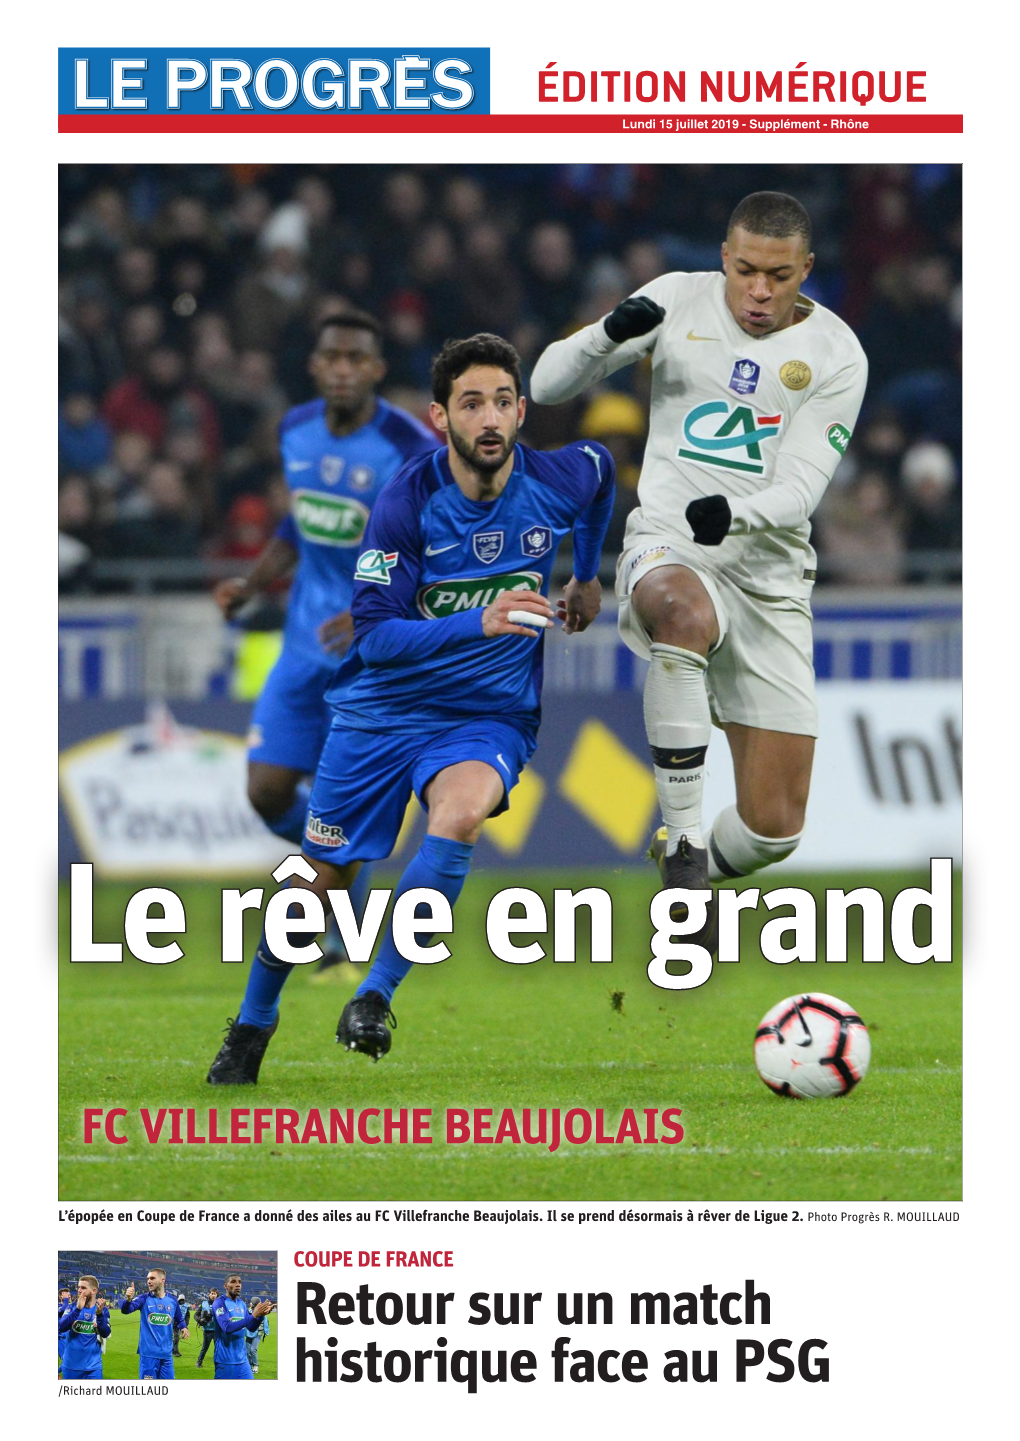 Retour Sur Un Match Historique Face Au PSG /Richard MOUILLAUD 2 SUPPLÉMENT FCVB Lundi 15 Juillet 2019